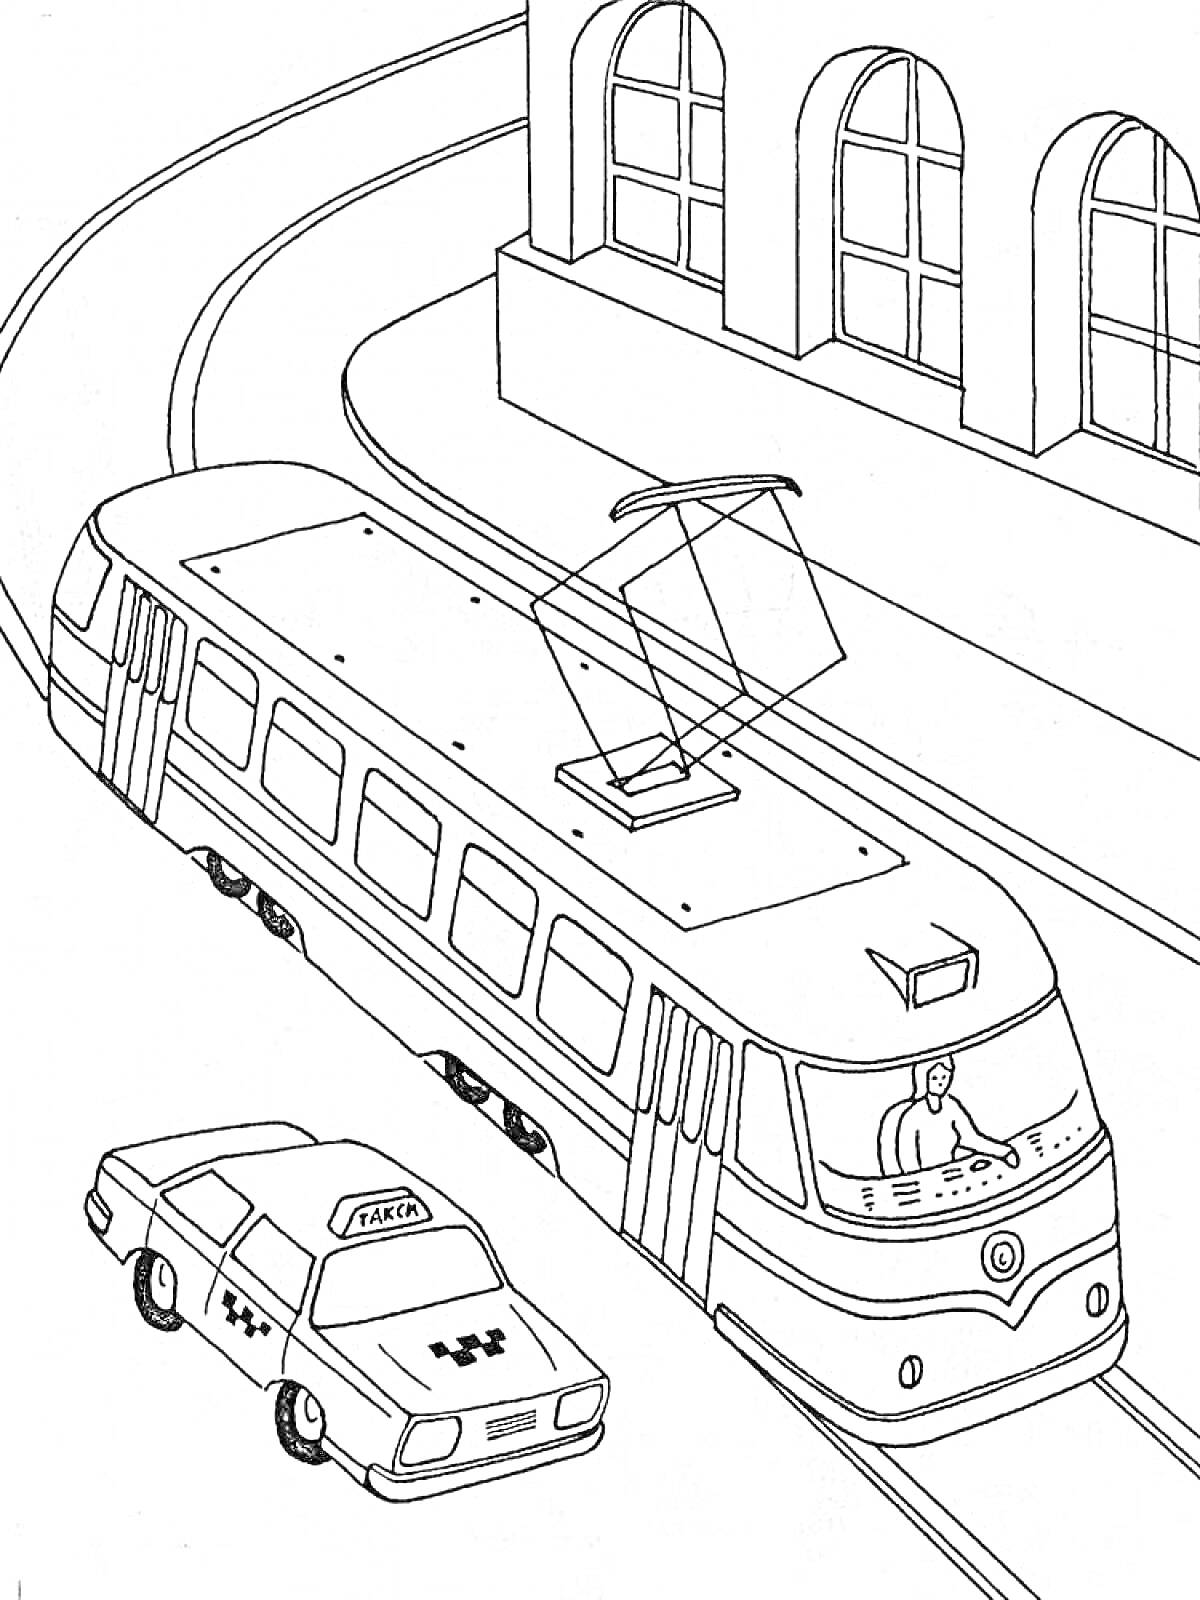 Раскраска Трамвай на городской улице, такси, и здание с арочными окнами